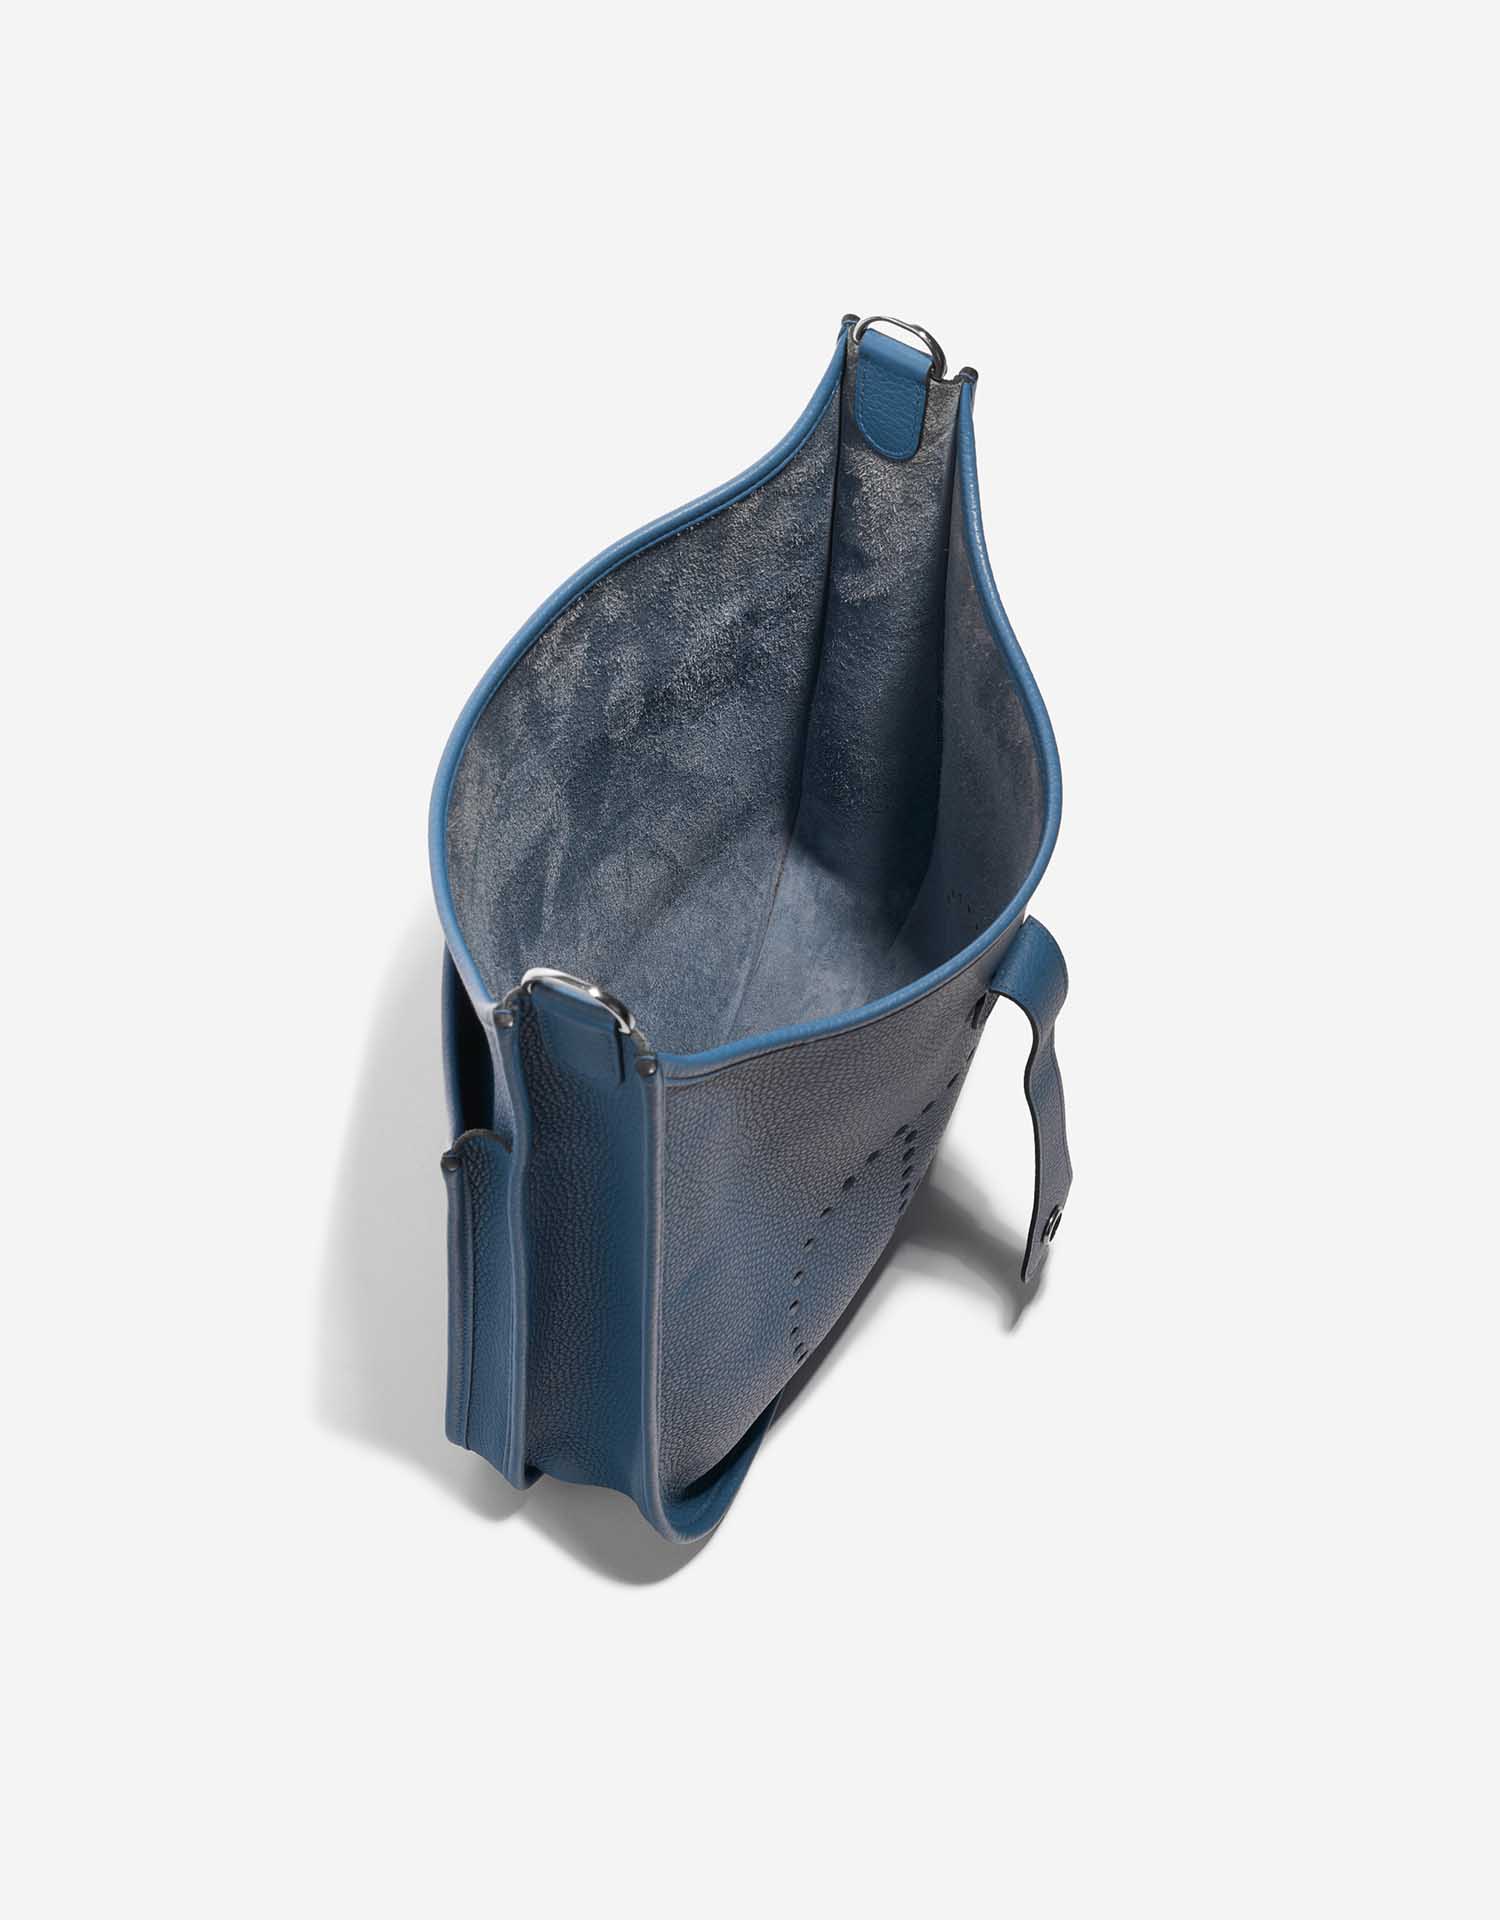 Gebrauchte Hermès Tasche Evelyne 33 Clemence Bleu Agathe Blue Inside | Verkaufen Sie Ihre Designer-Tasche auf Saclab.com